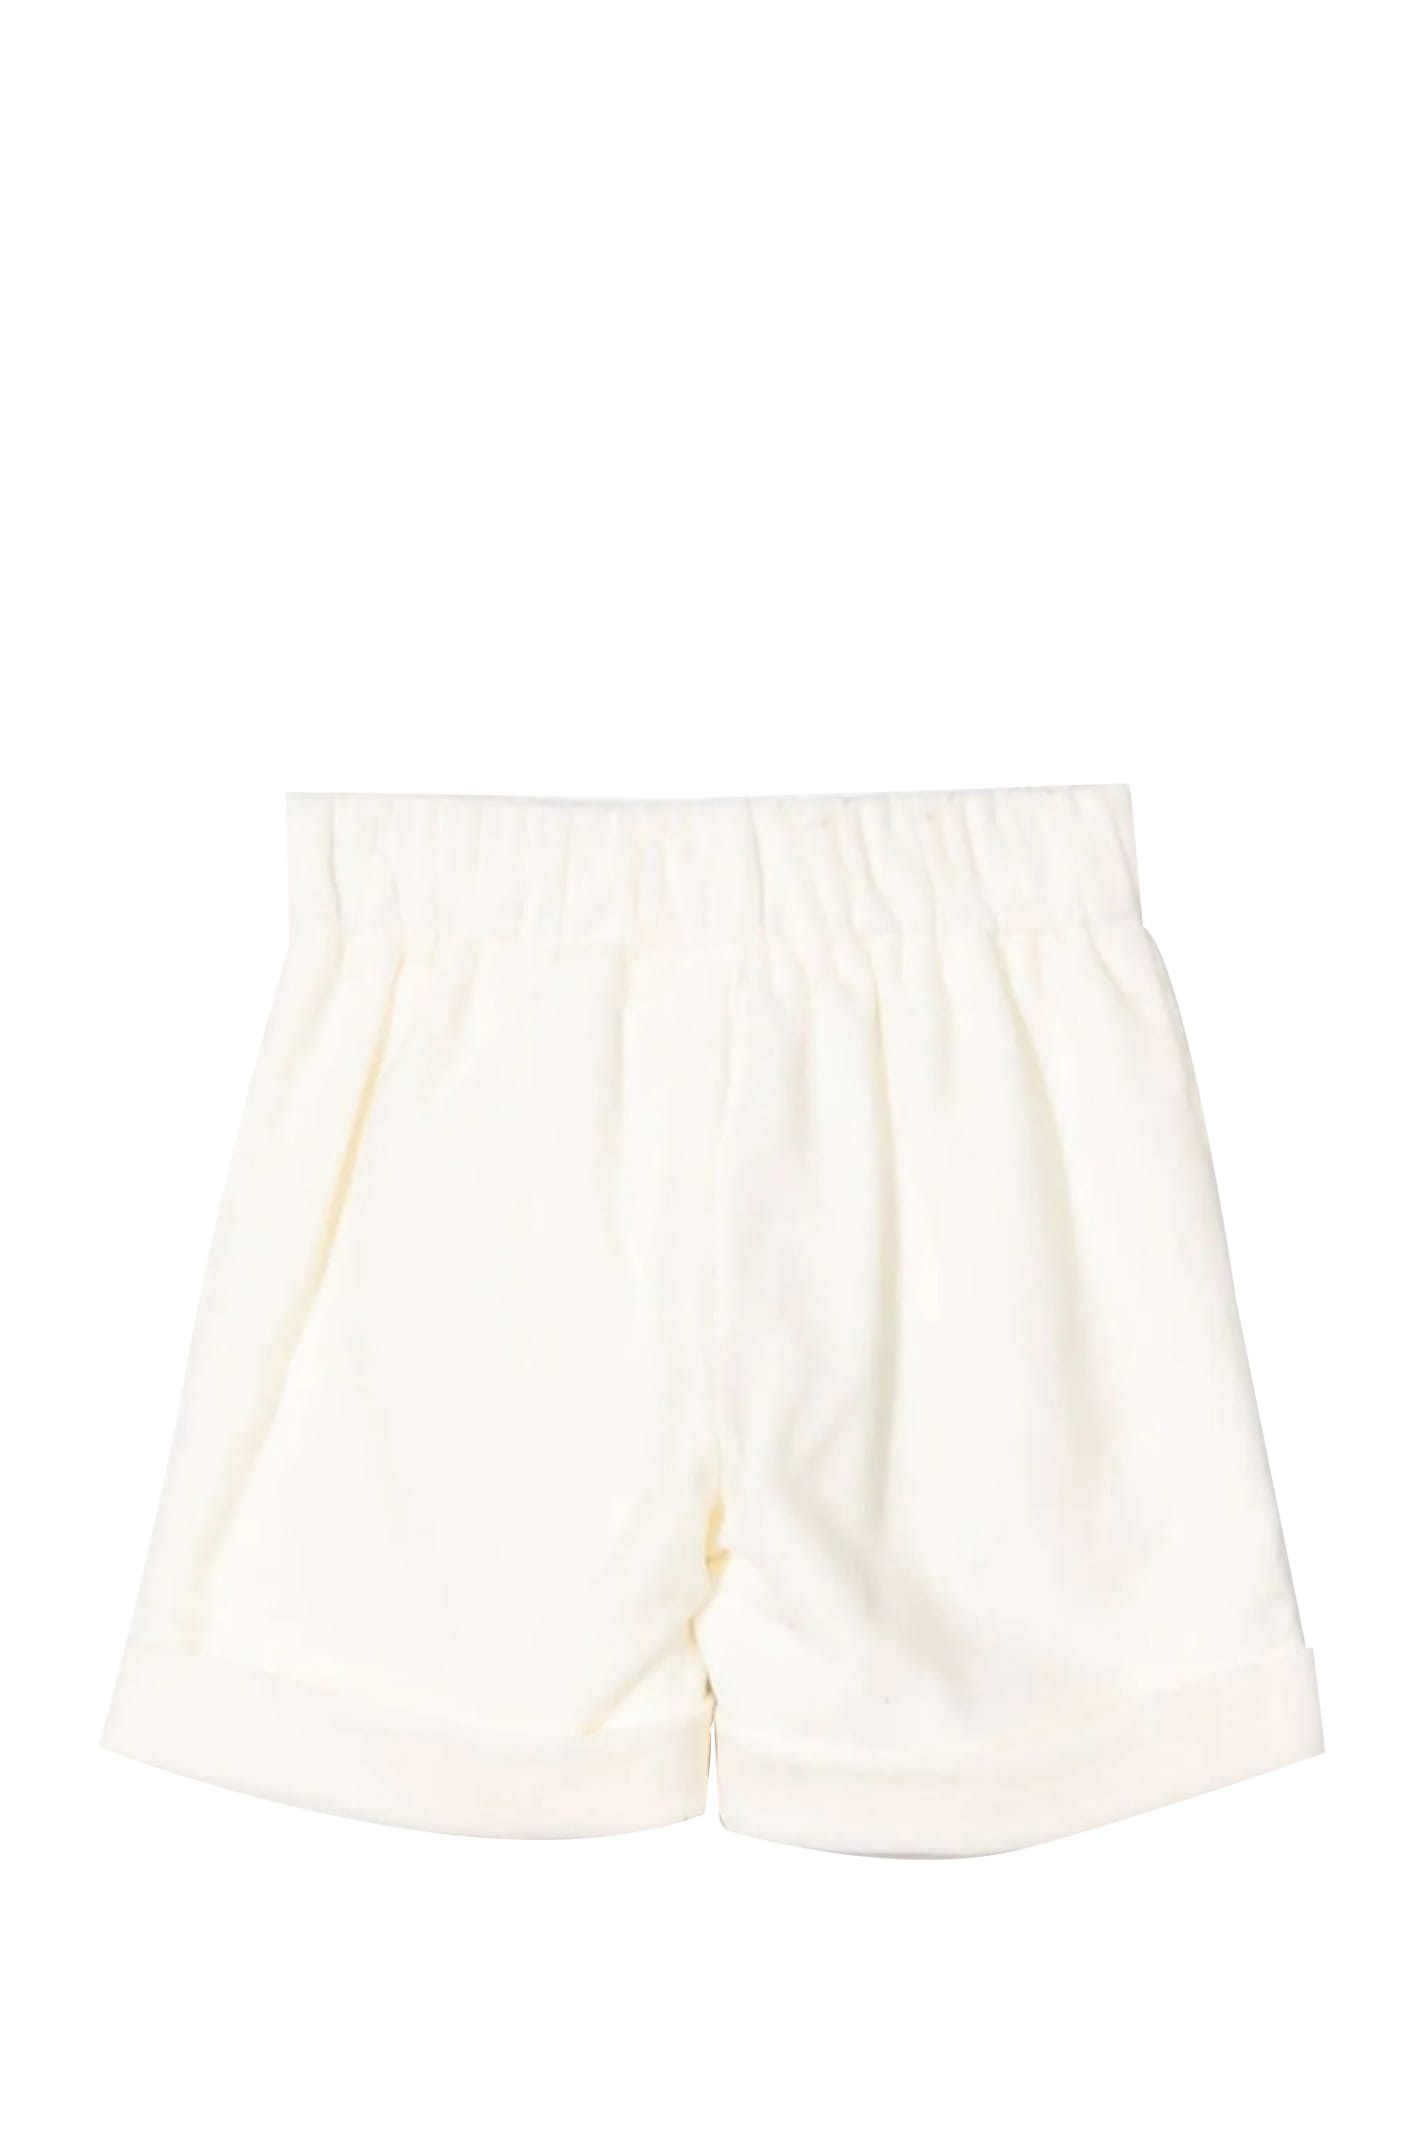 Shop La Stupenderia Shorts With Cotton In White